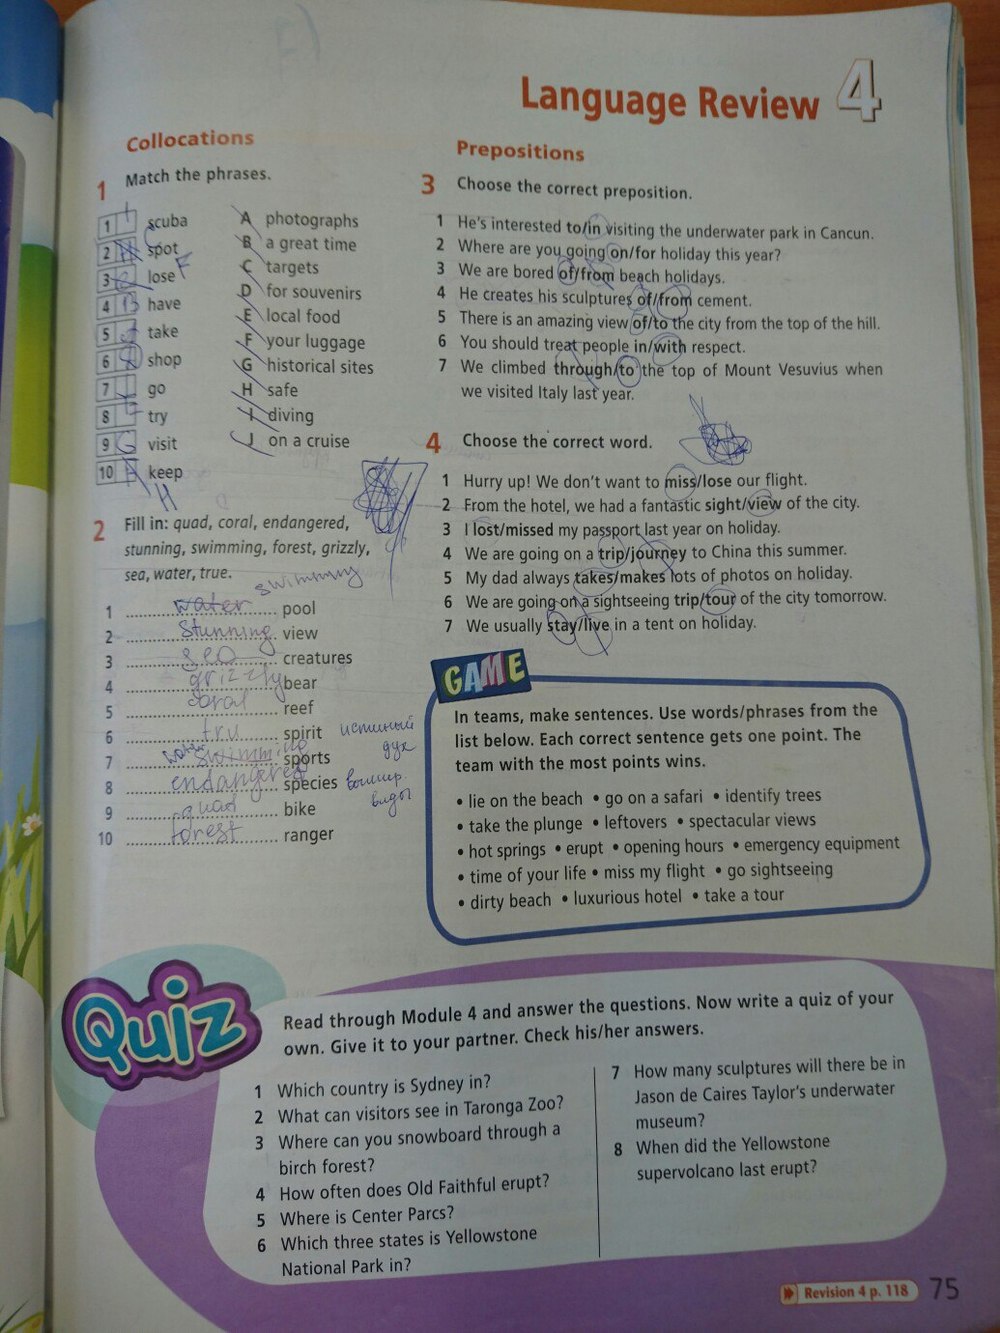 Английский язык учебник страница 40 41